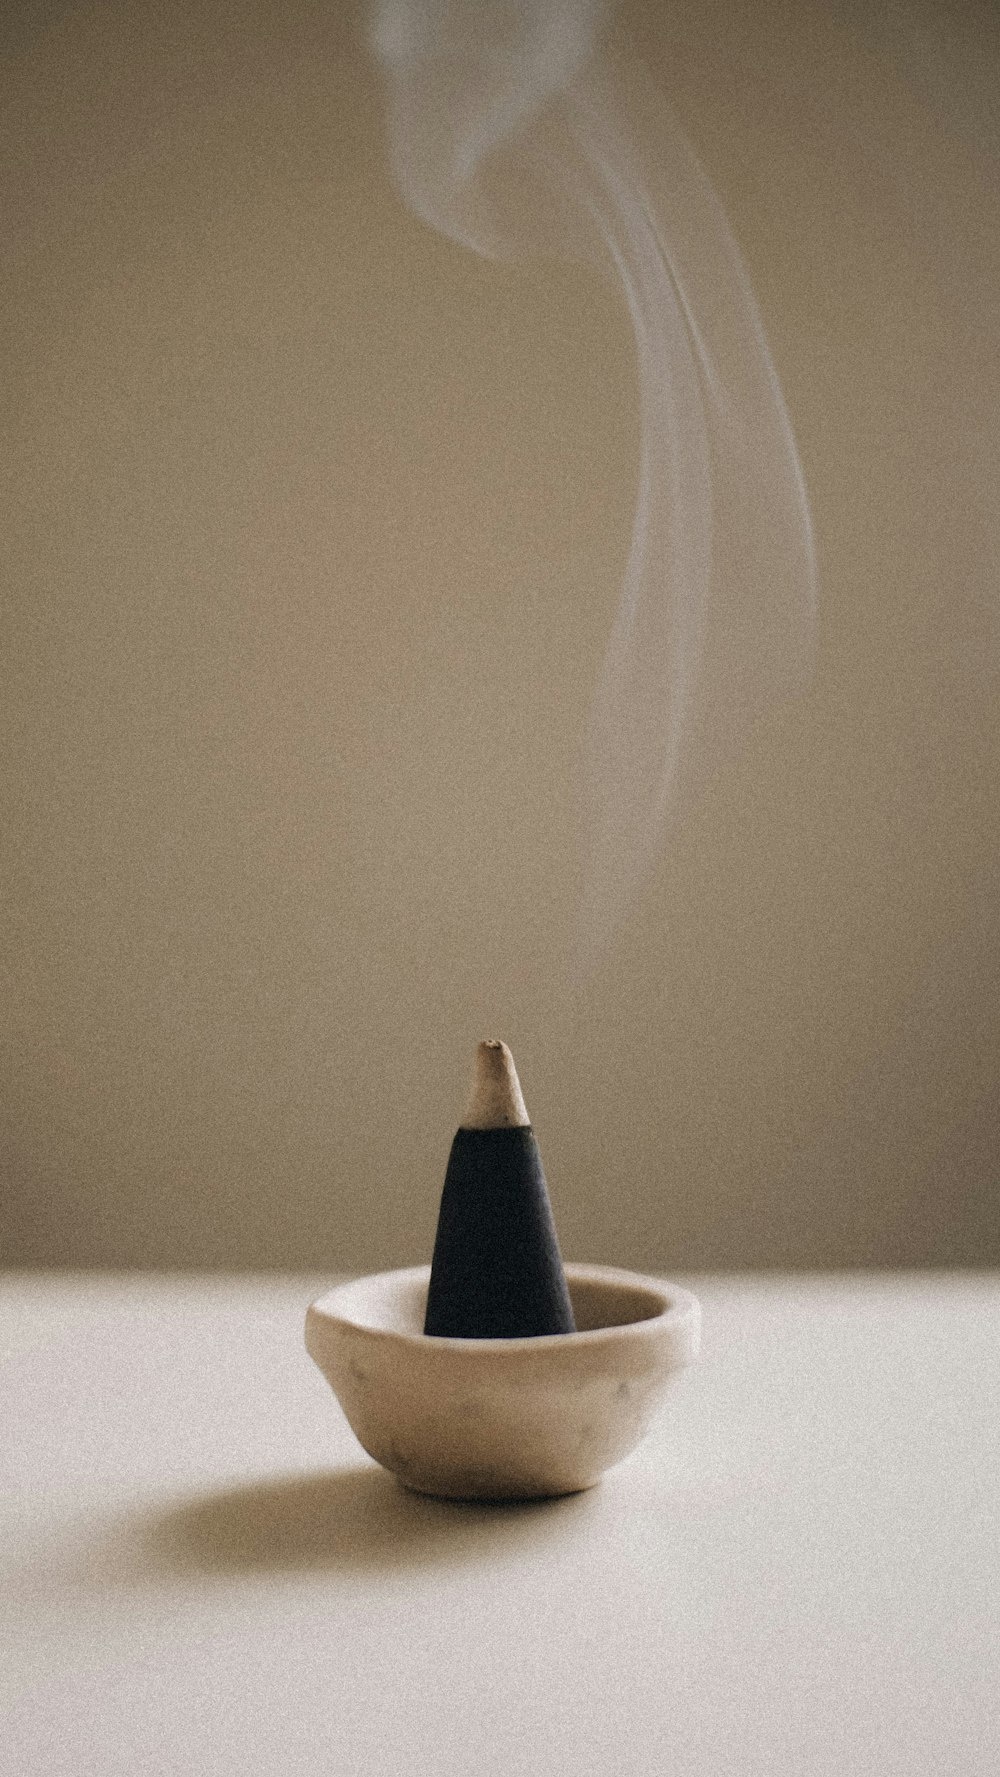 テーブルの上のボウルに座っている煙突